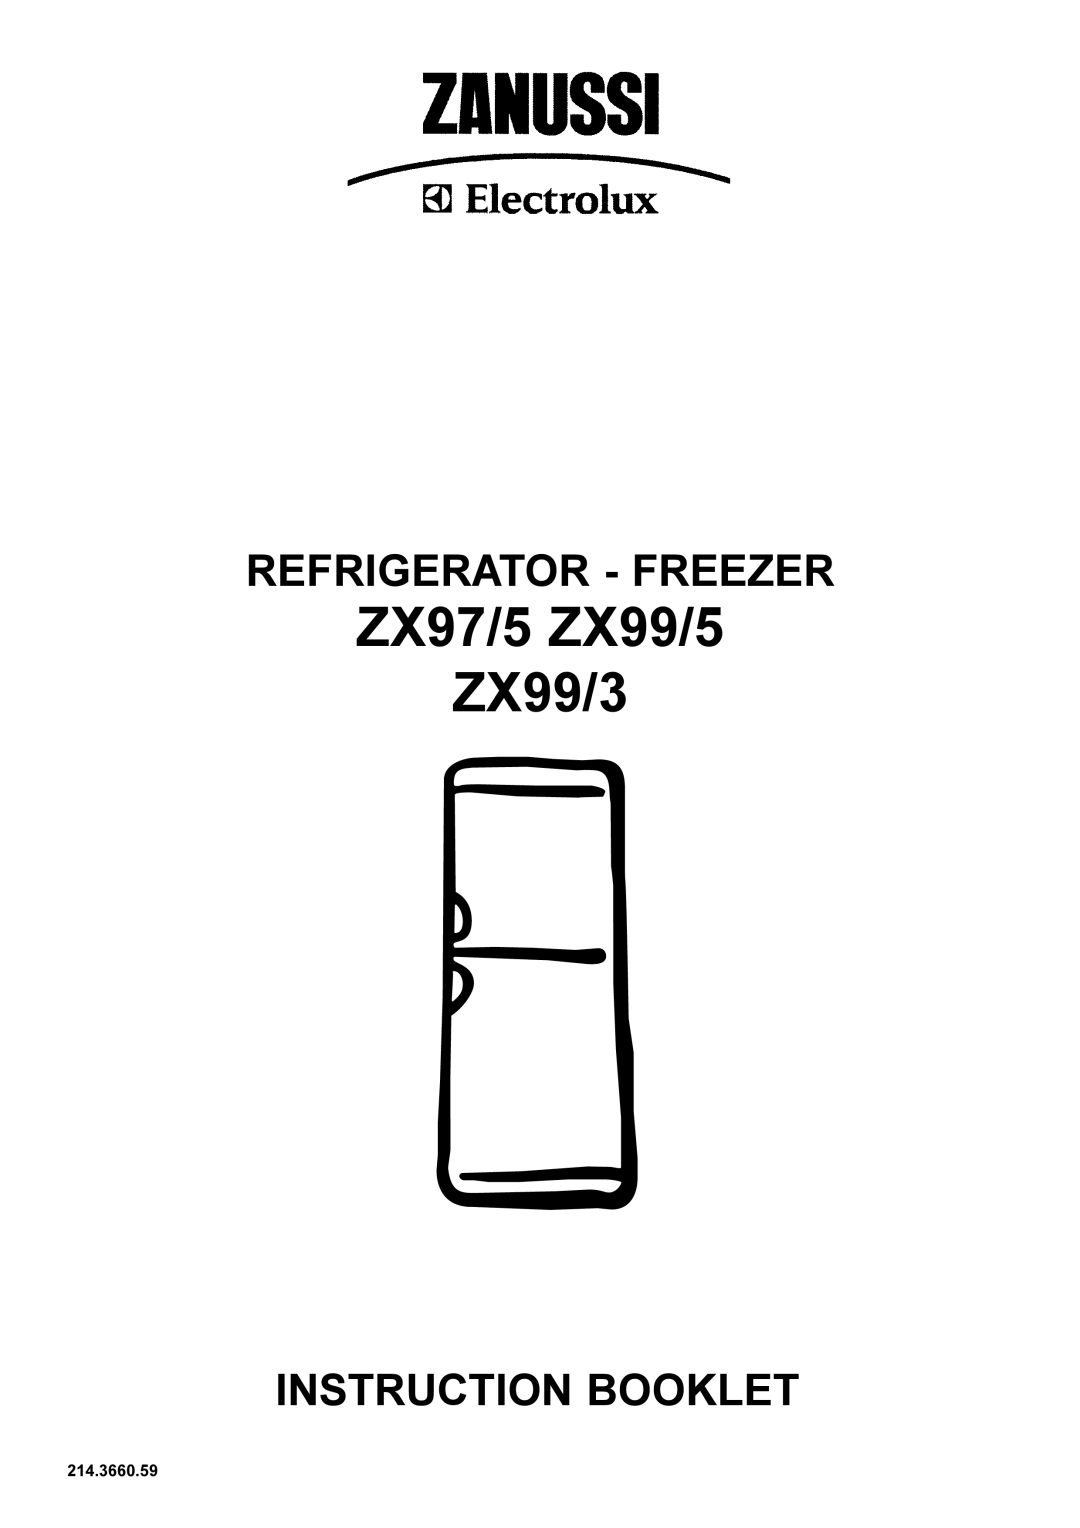 Zanussi manual ZX97/5 ZX99/5 ZX99/3, Refrigerator - Freezer, Instruction Booklet, 214.3660.59 